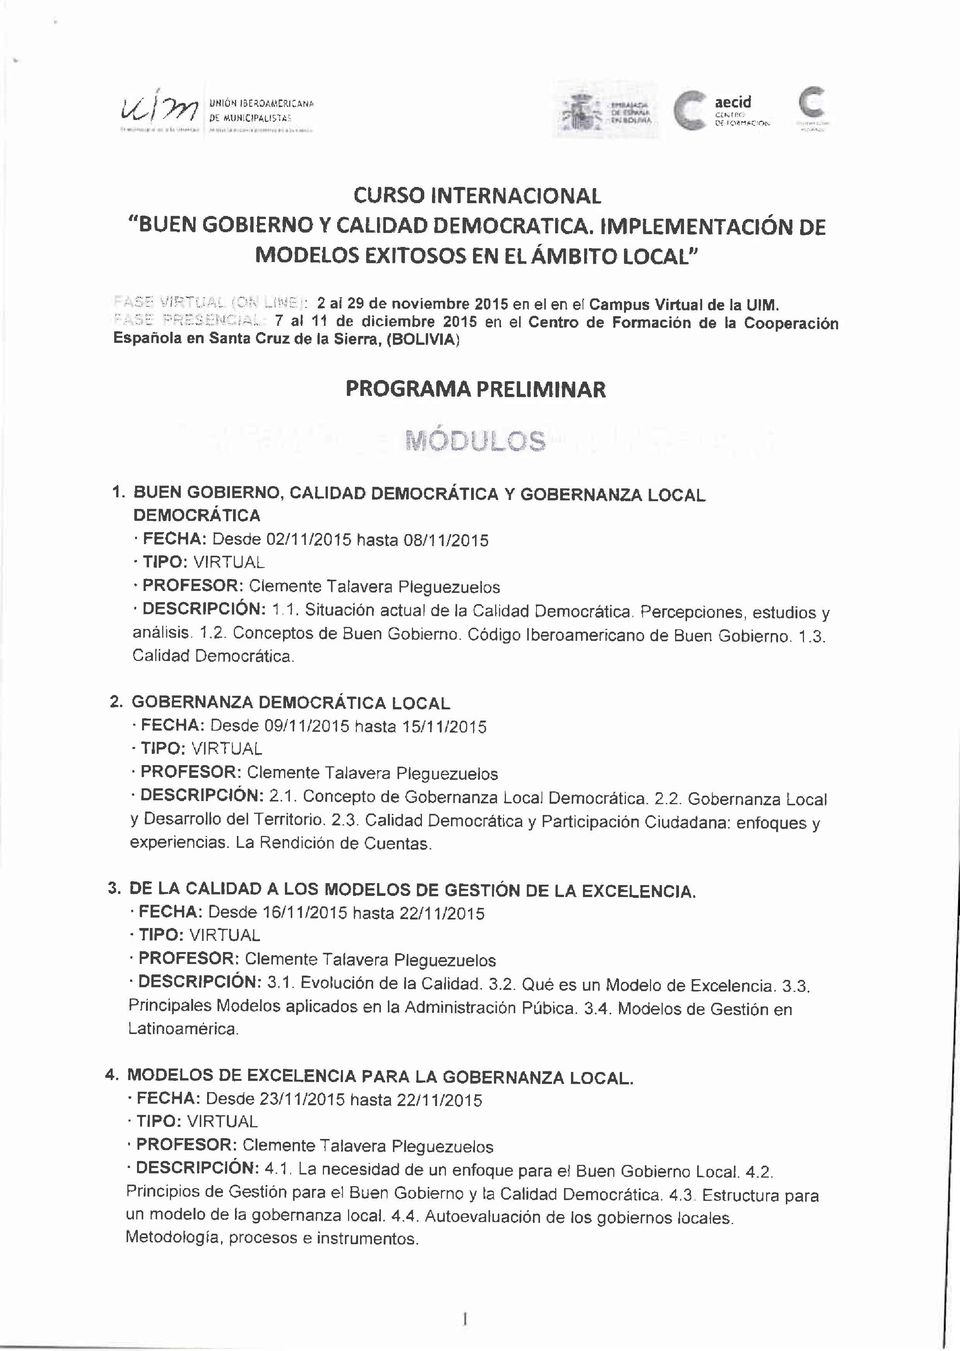 .. 7 al 11 de diciembre 2015 en el Gentro de Formación de la Cooperación Española en Santa Cruz de la Sierra, (BOLIVIA) PROGRAMA PRELIMINAR ffi#*tll*s I.